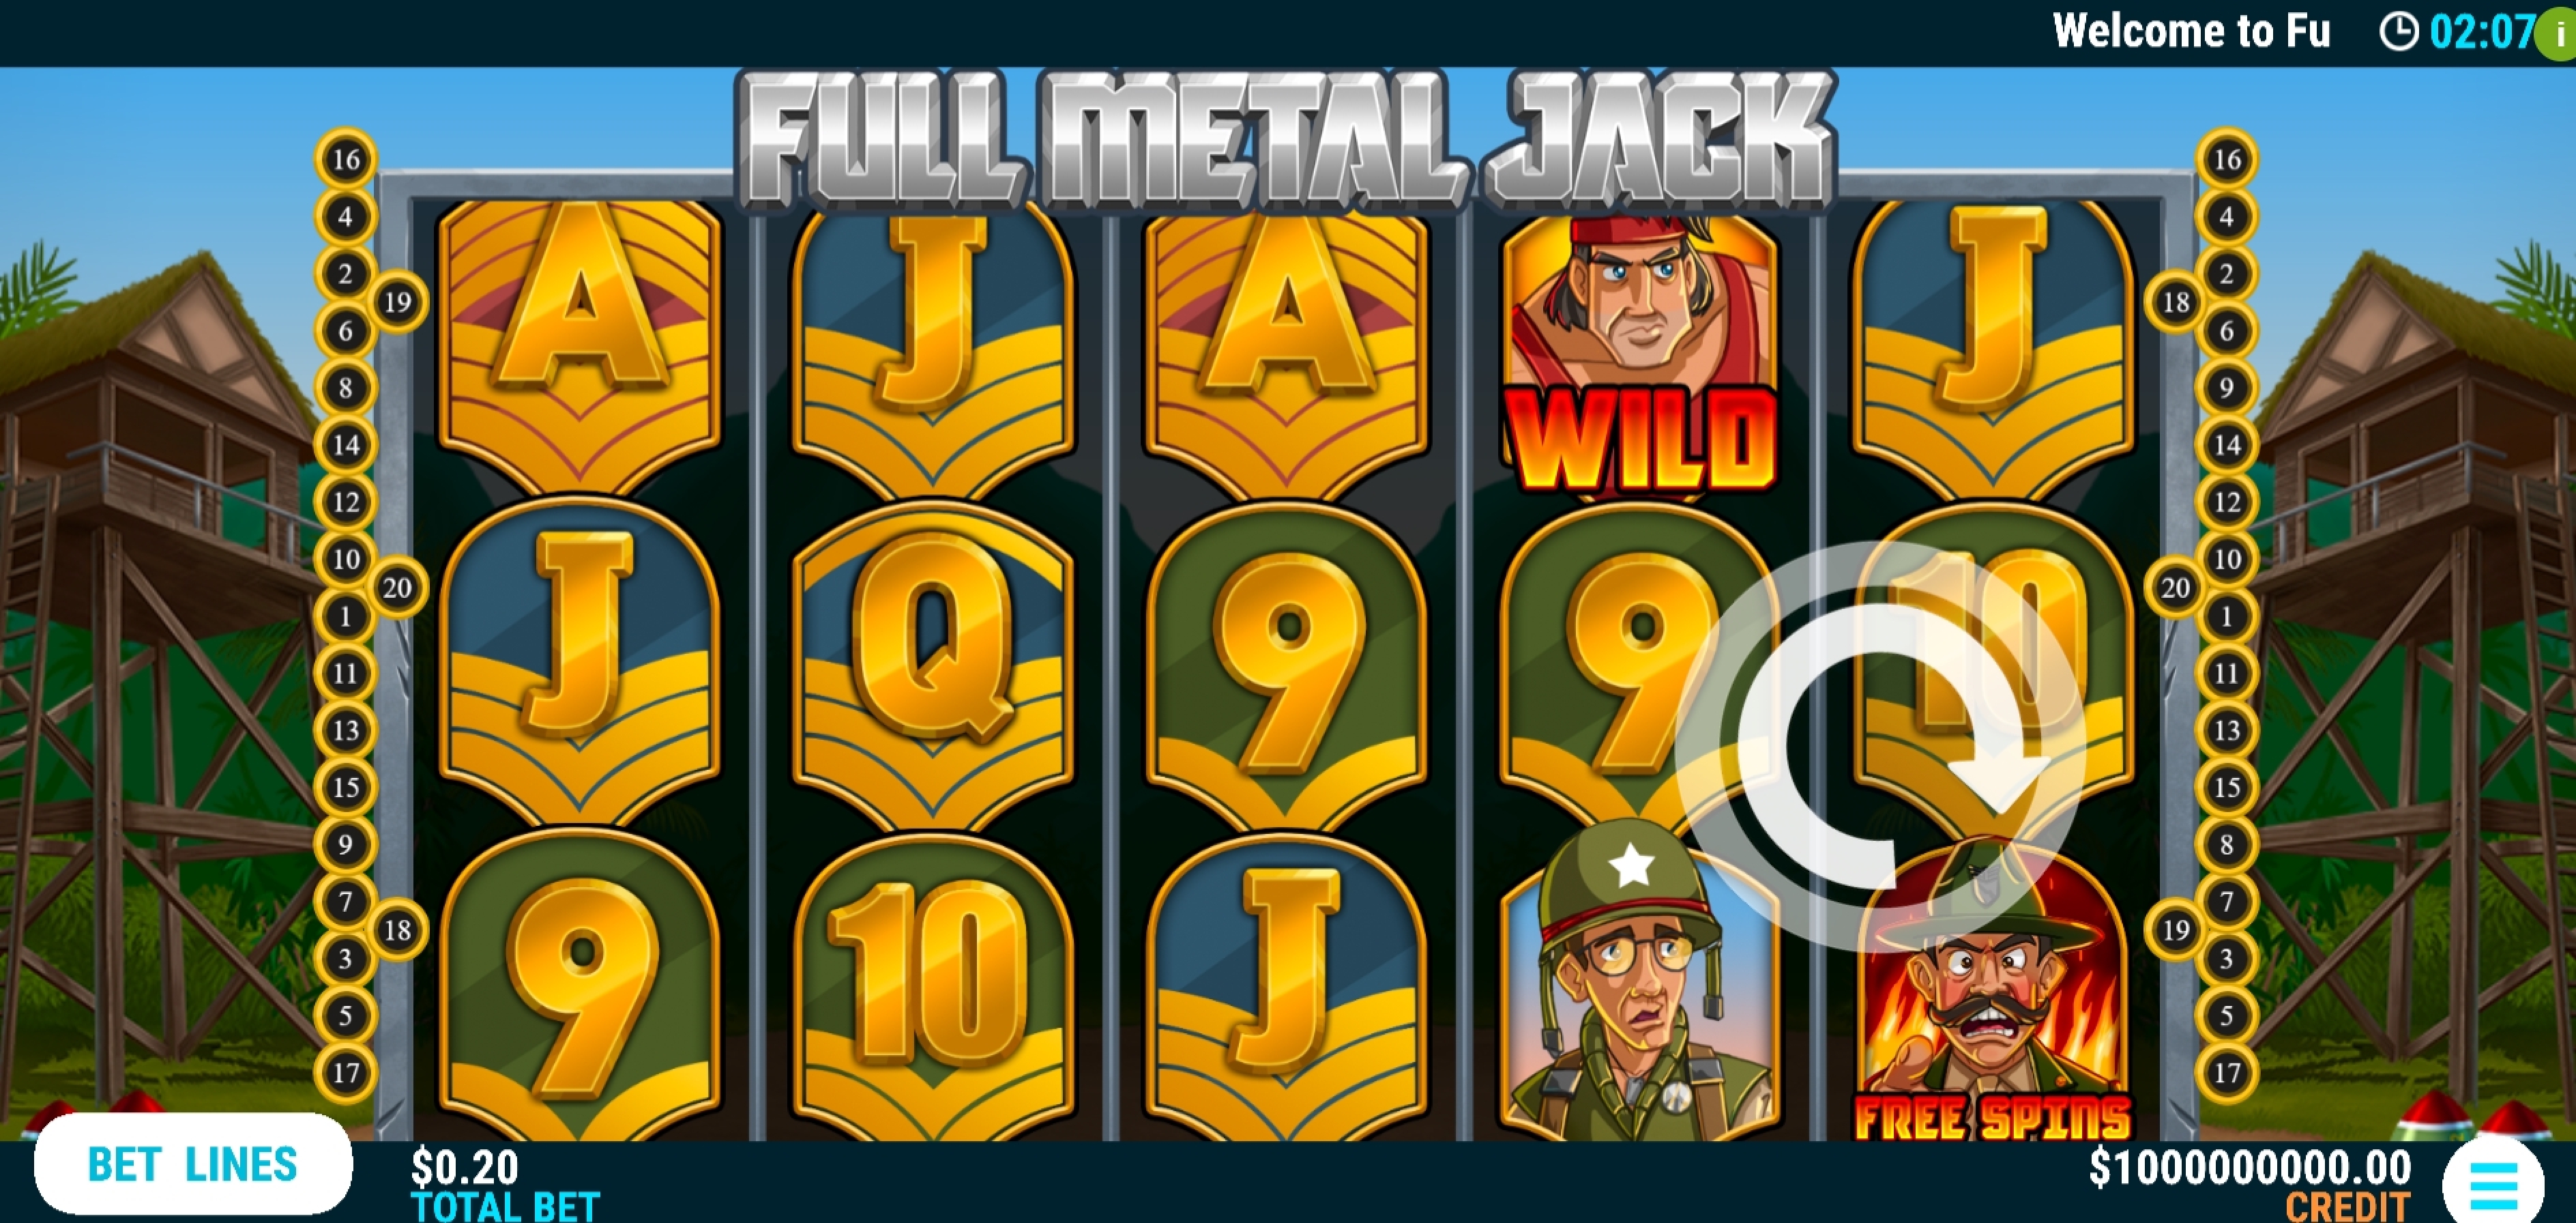 Reels in Full Metal Jack Slot Game by Slot Factory